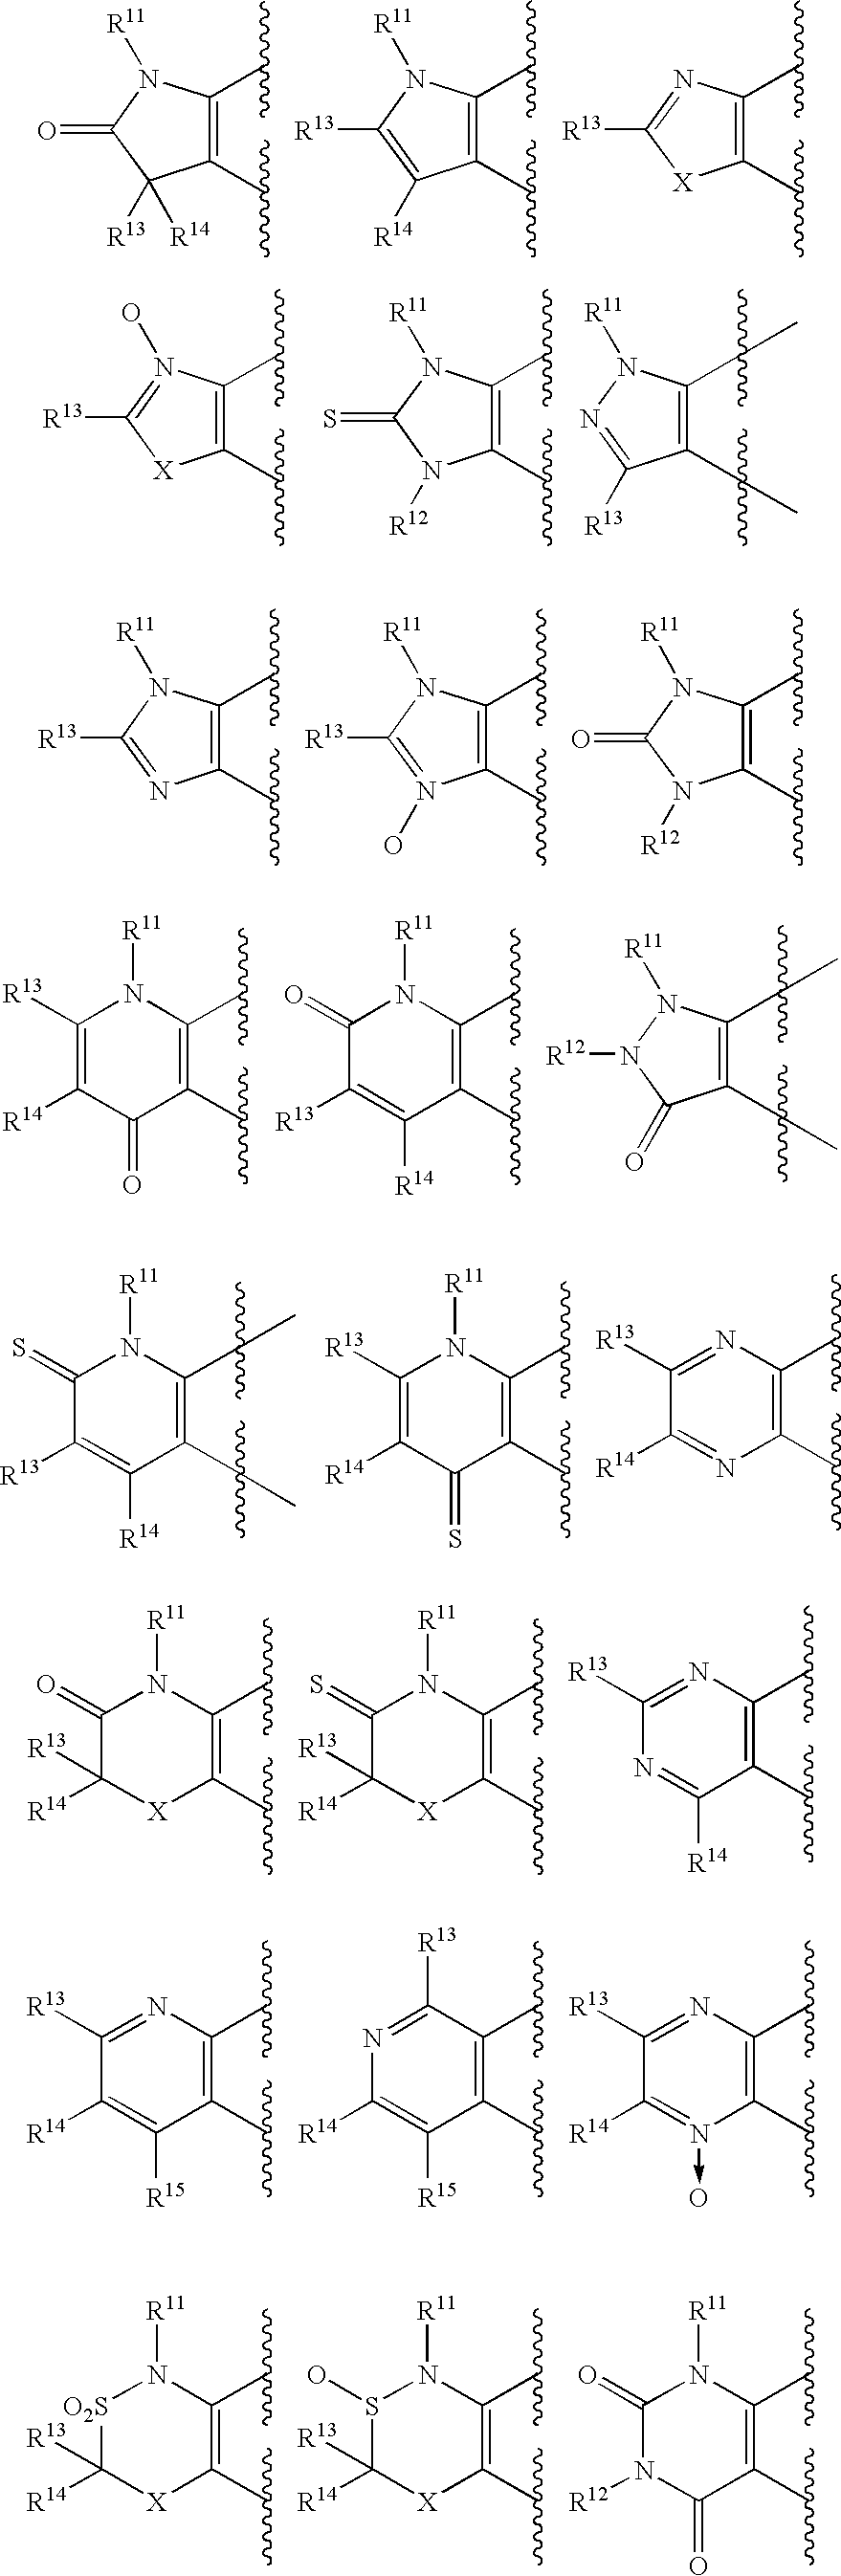 Tricyclic Benzopyrane Compound as Anti-Arrhythmic Agents